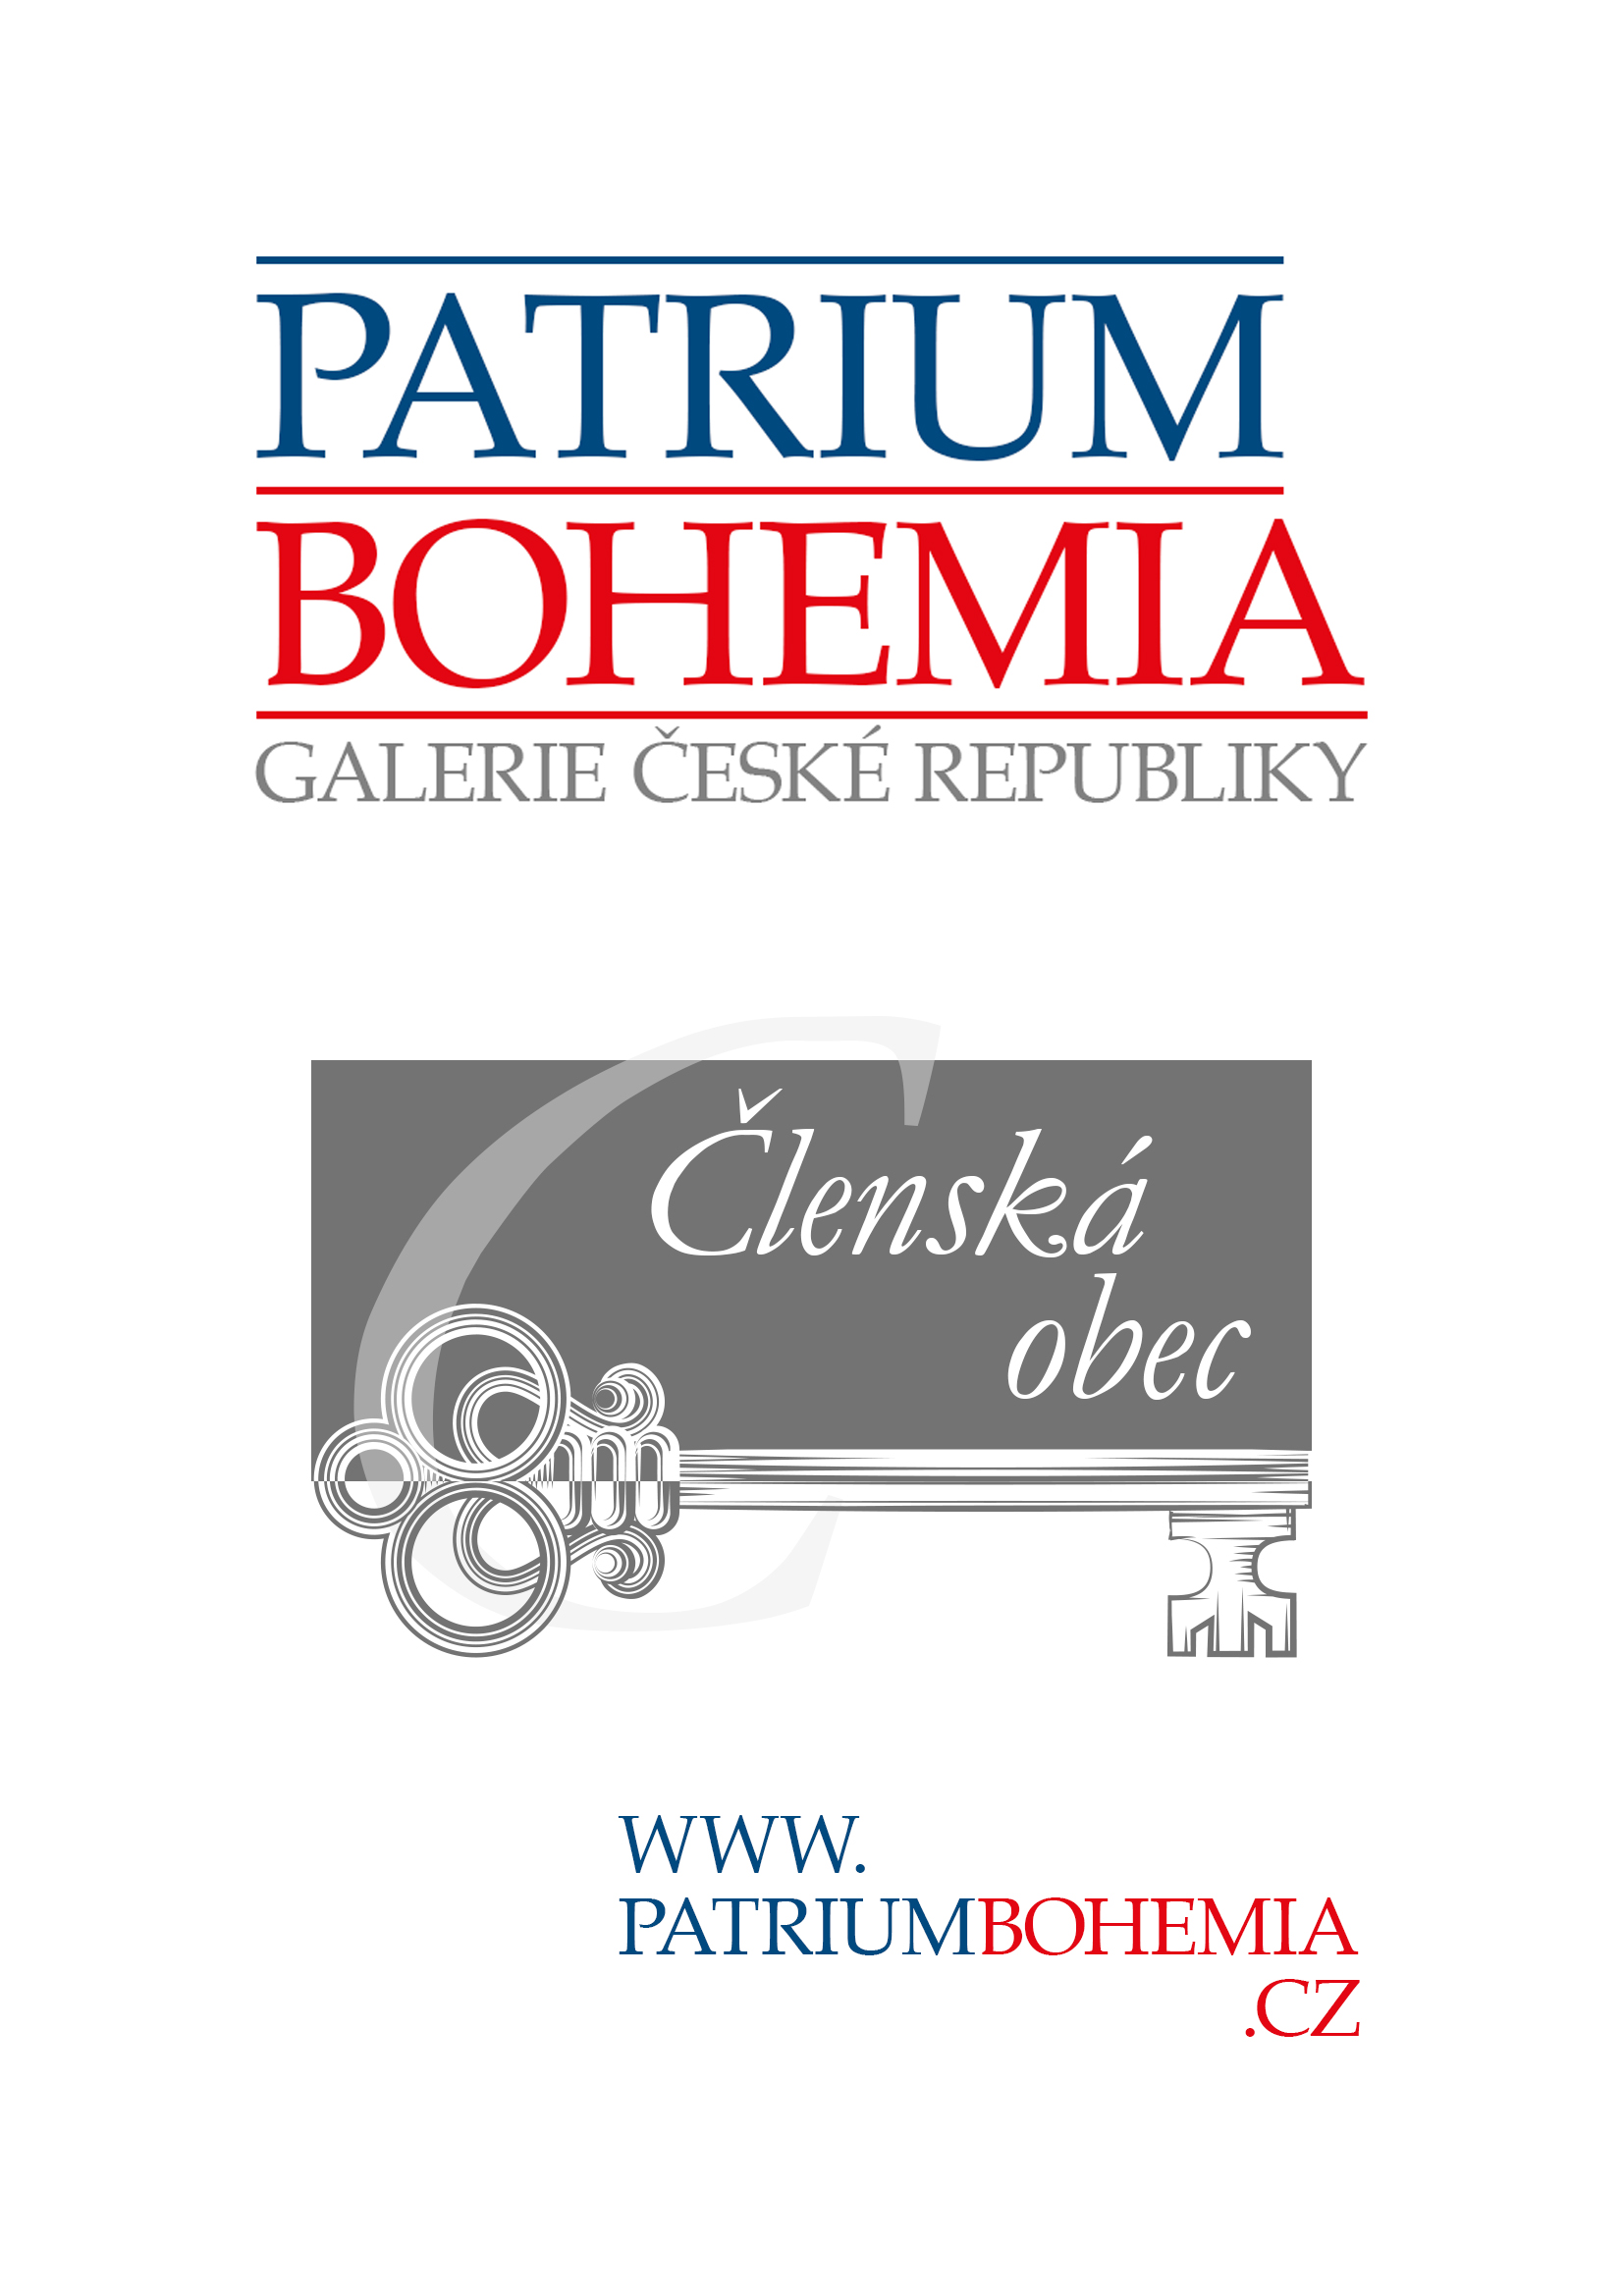 Plakát A4 Patrium Bohemia.